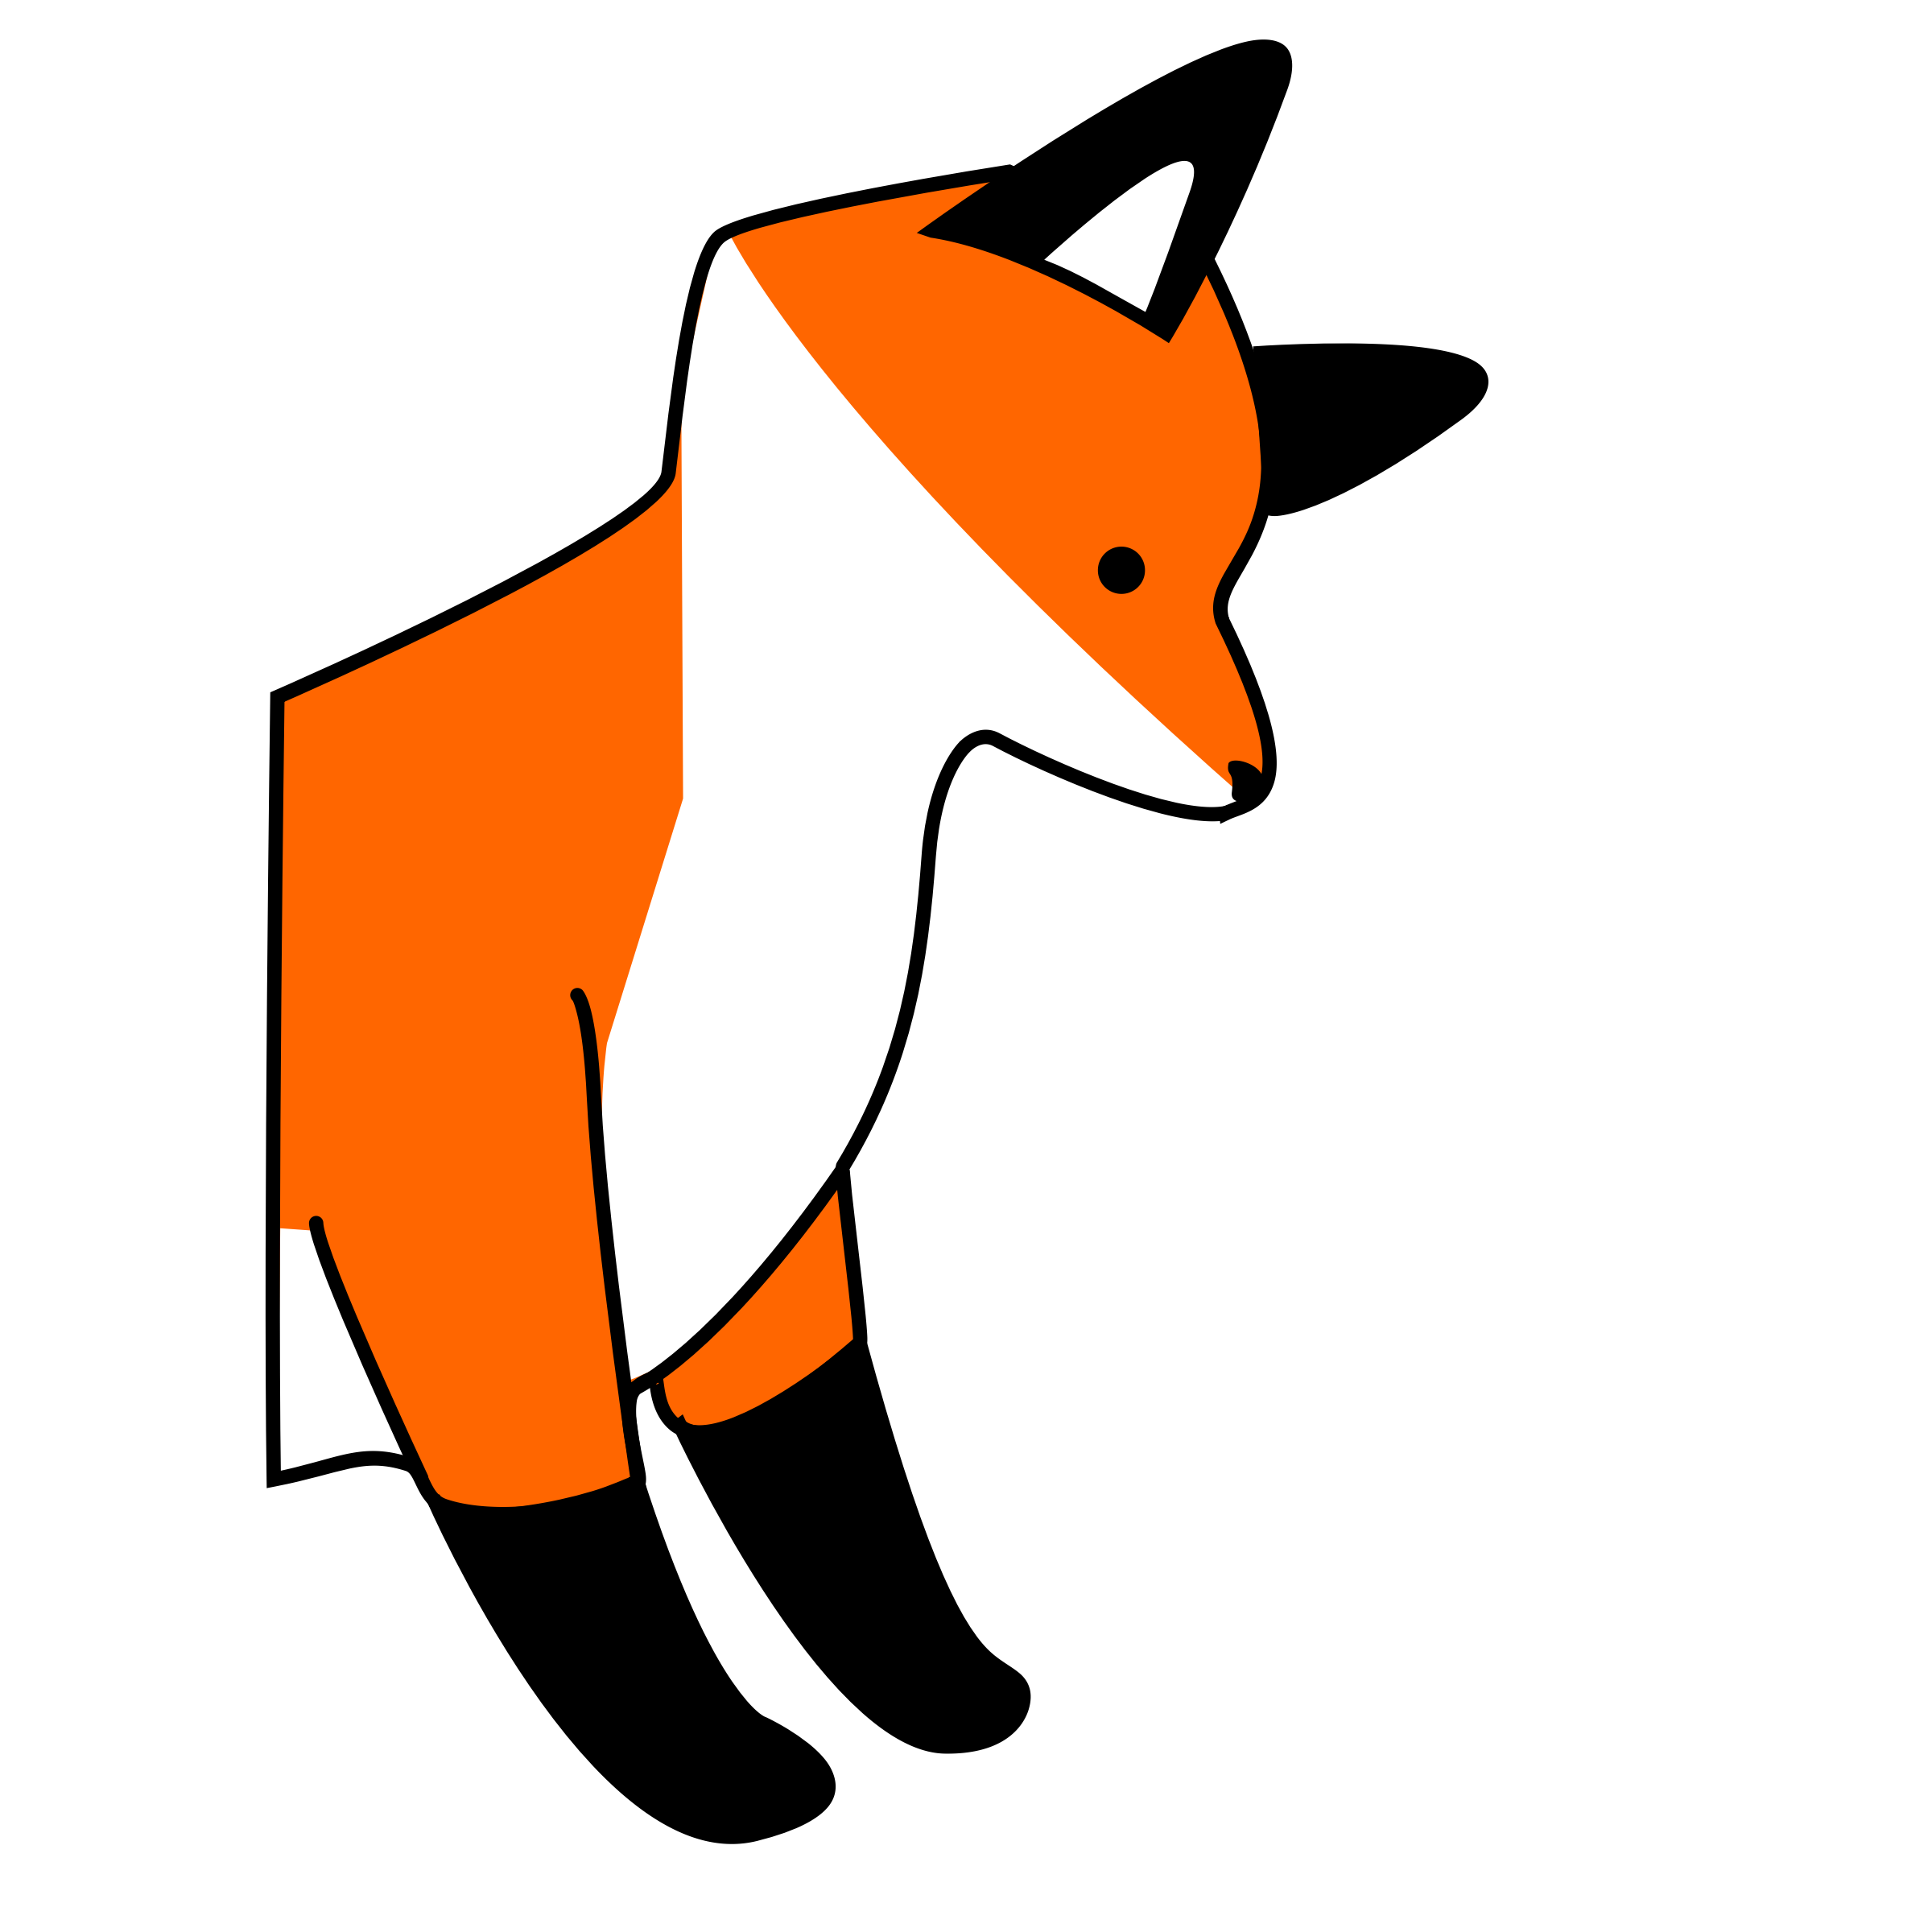 cartoon clipart of a fox - photo #50